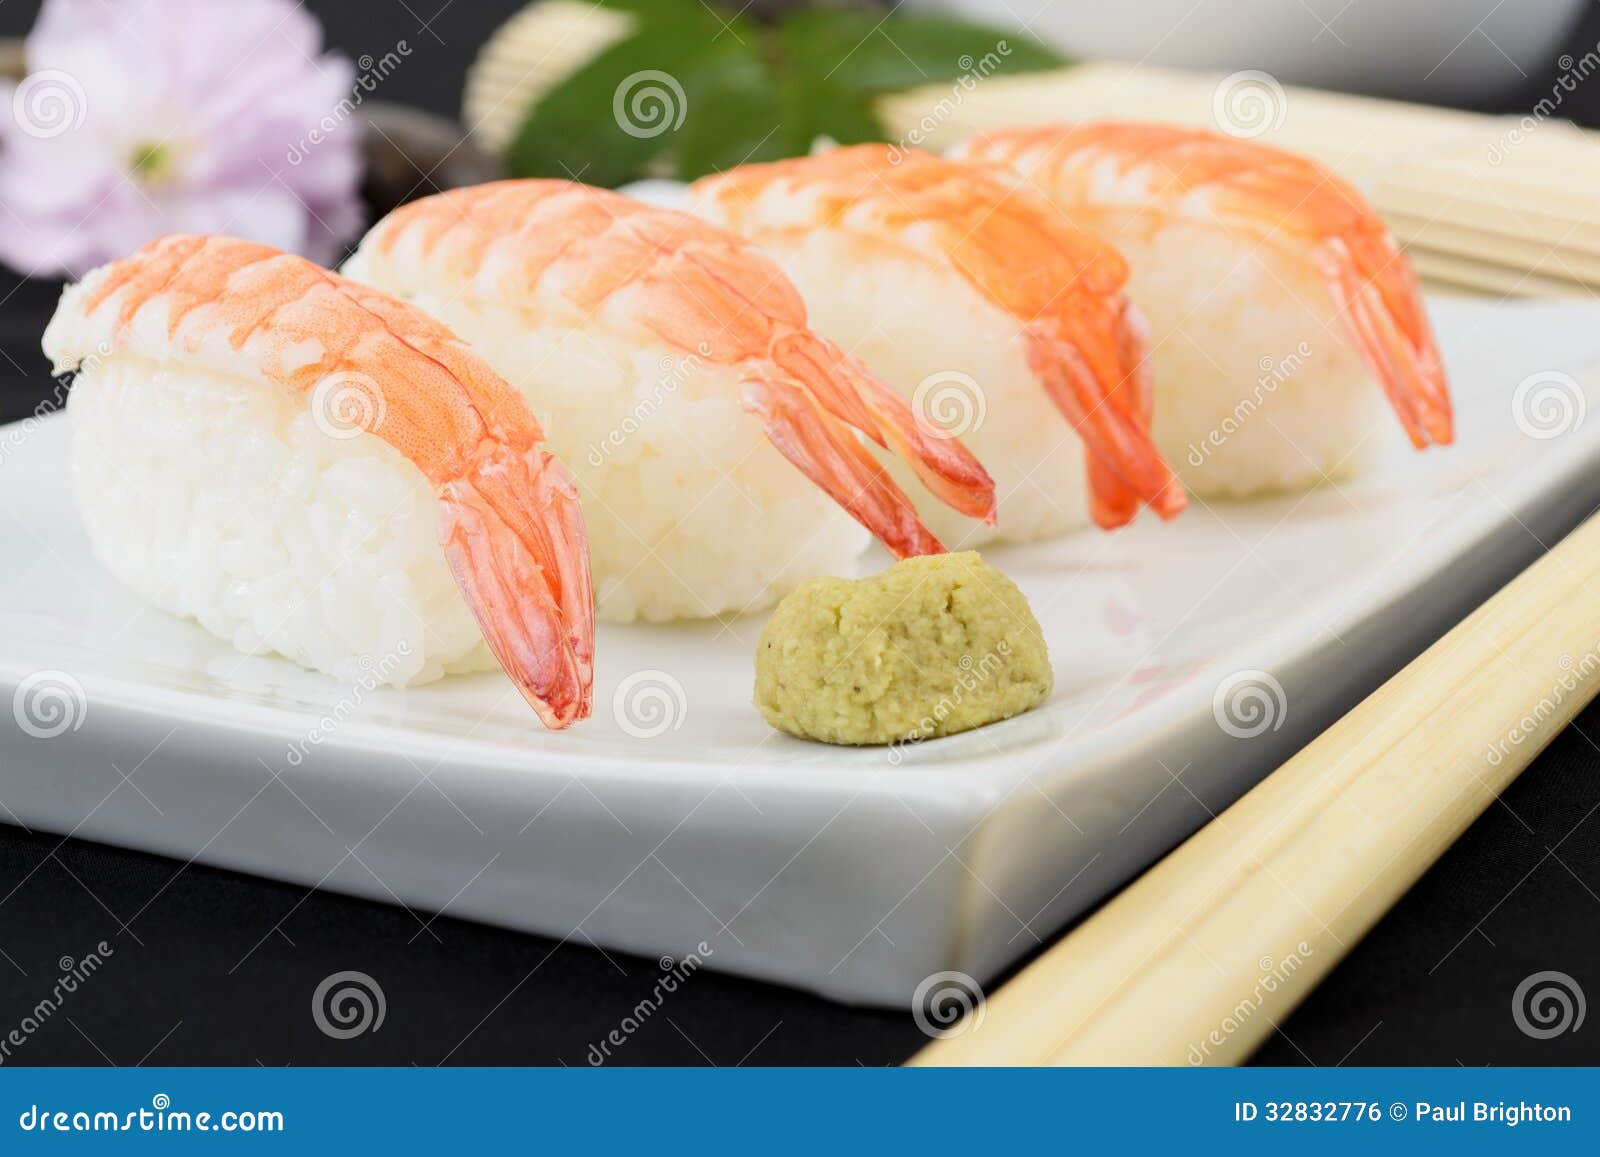 ebi nigiri sushi